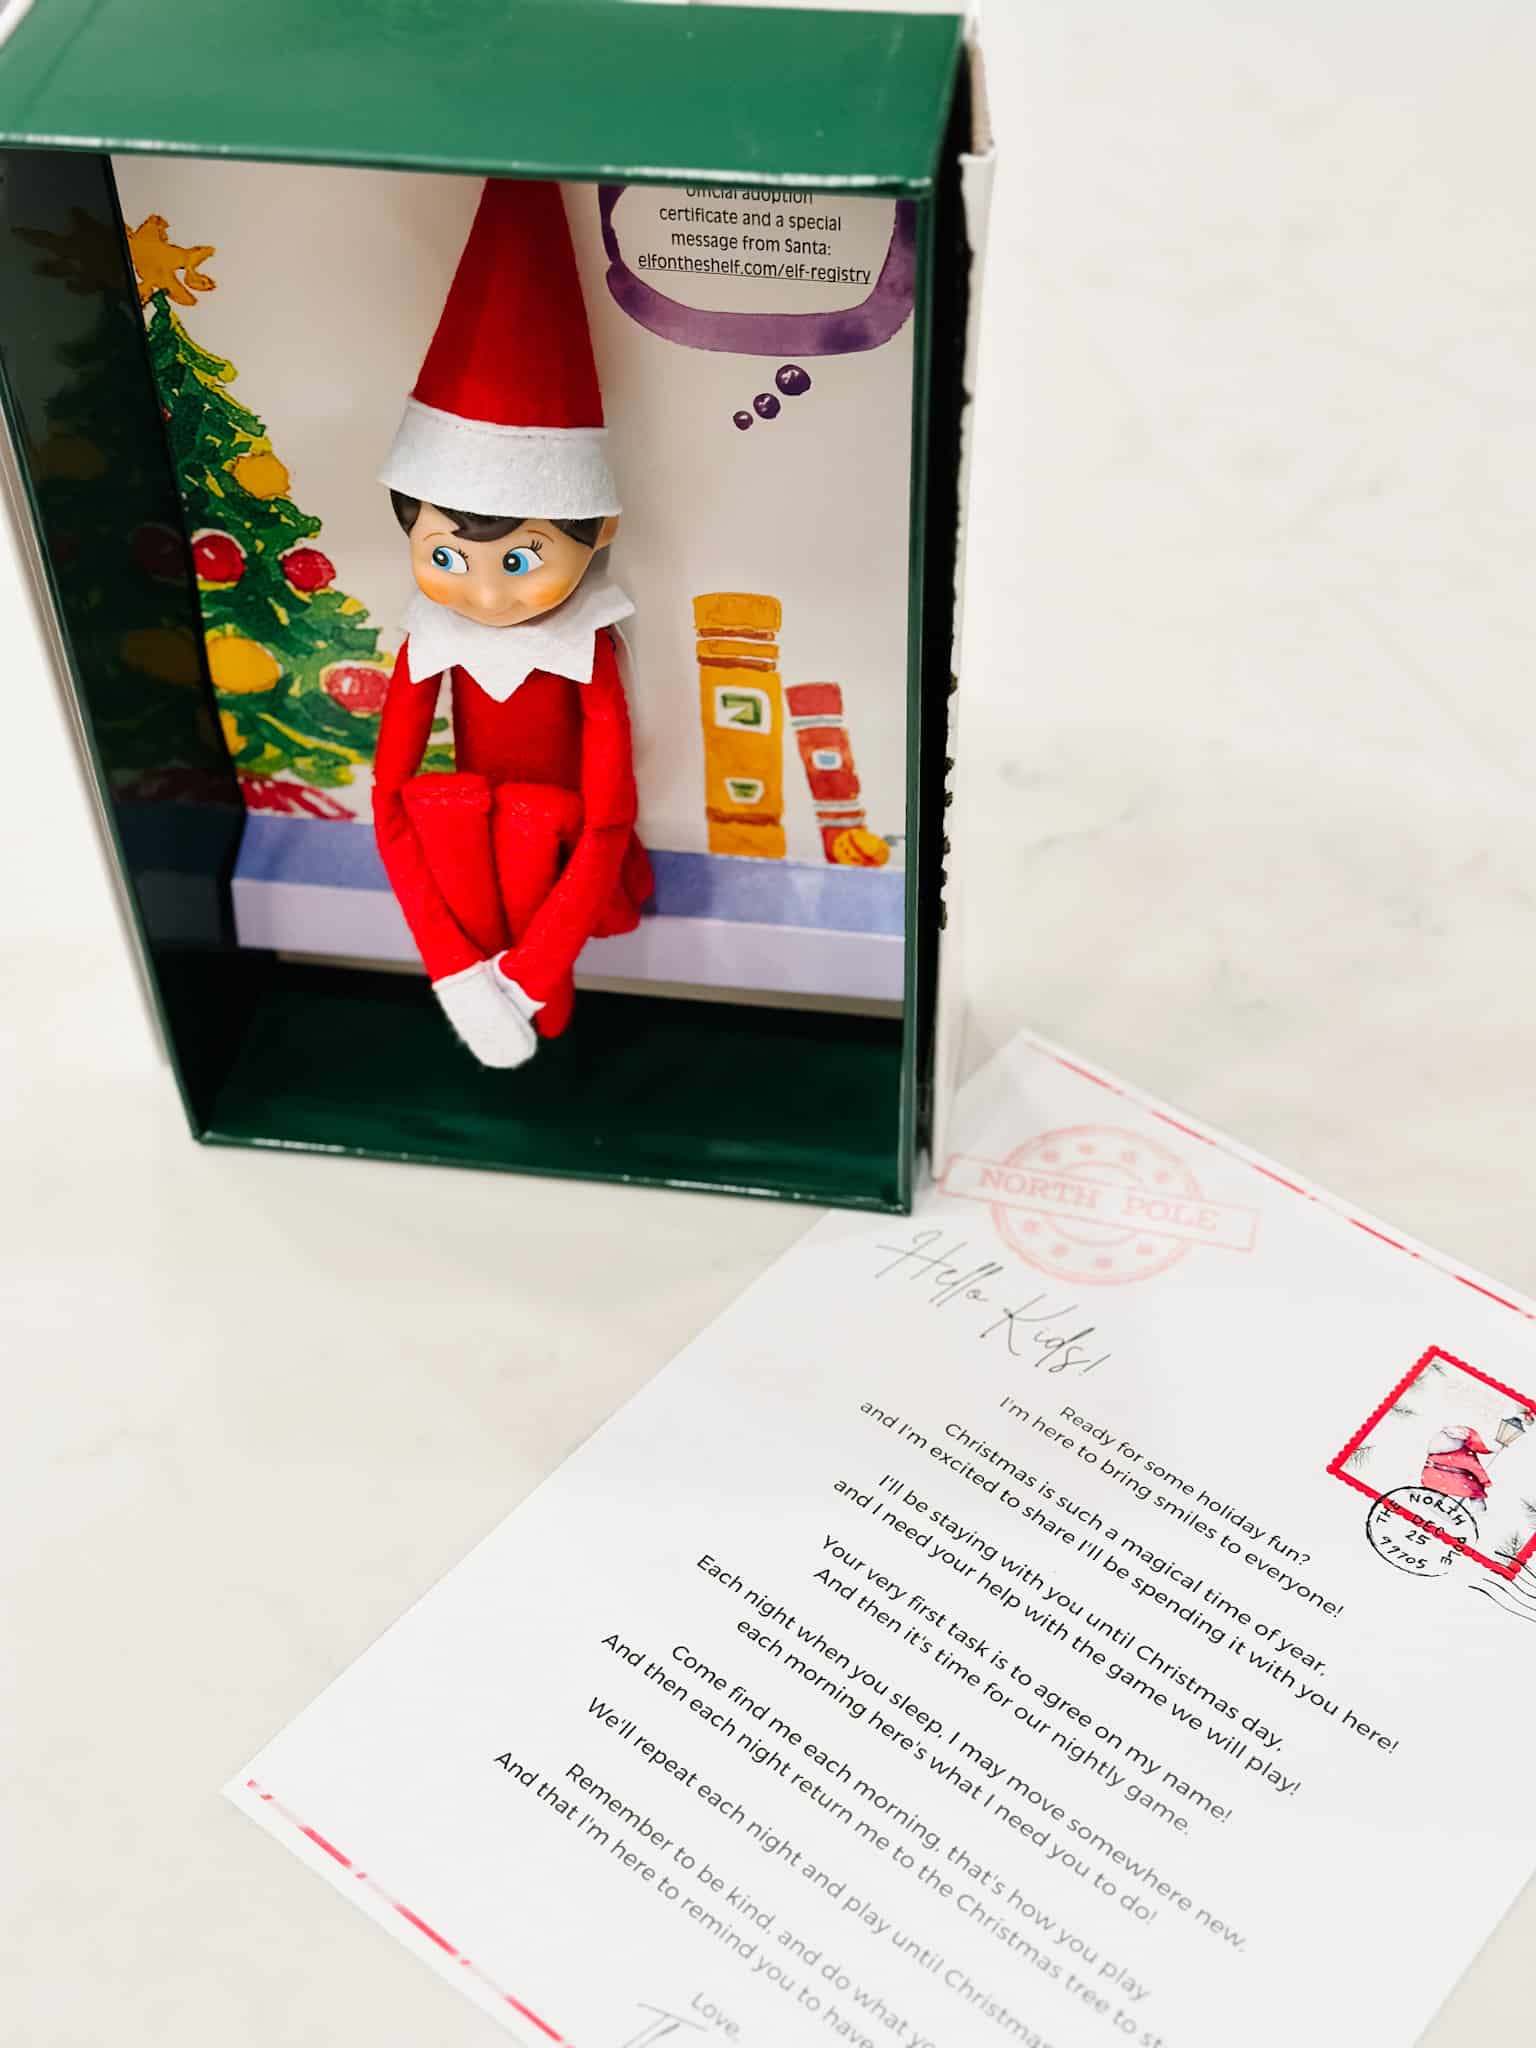 Elf on the Shelf Arrival Letter